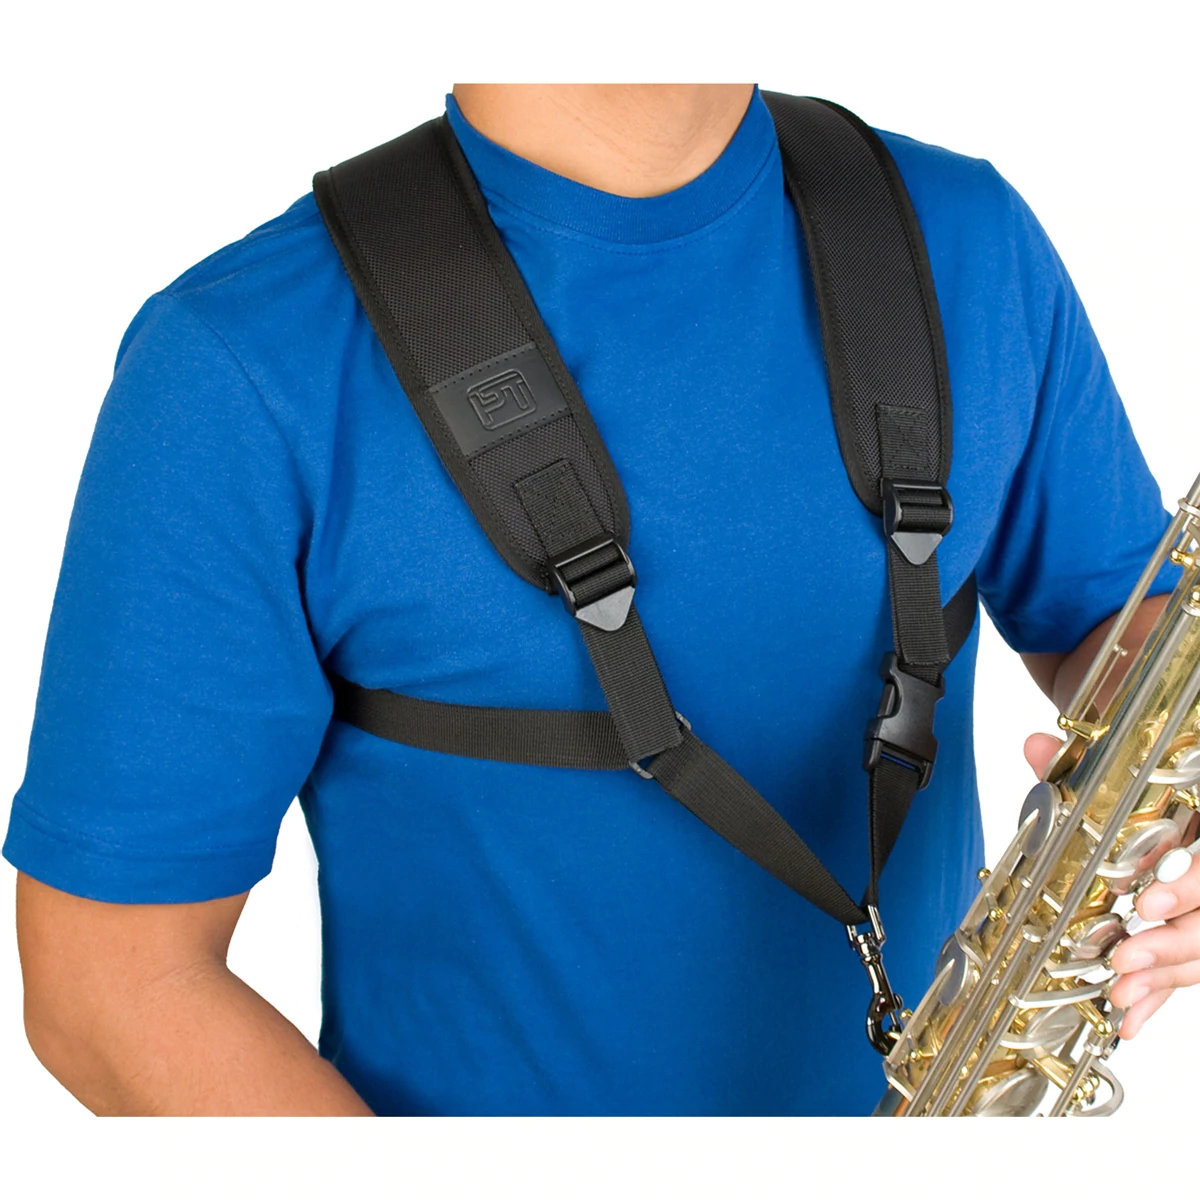 PROTEC Saxophone Harness w/ Metal Trigger Snap